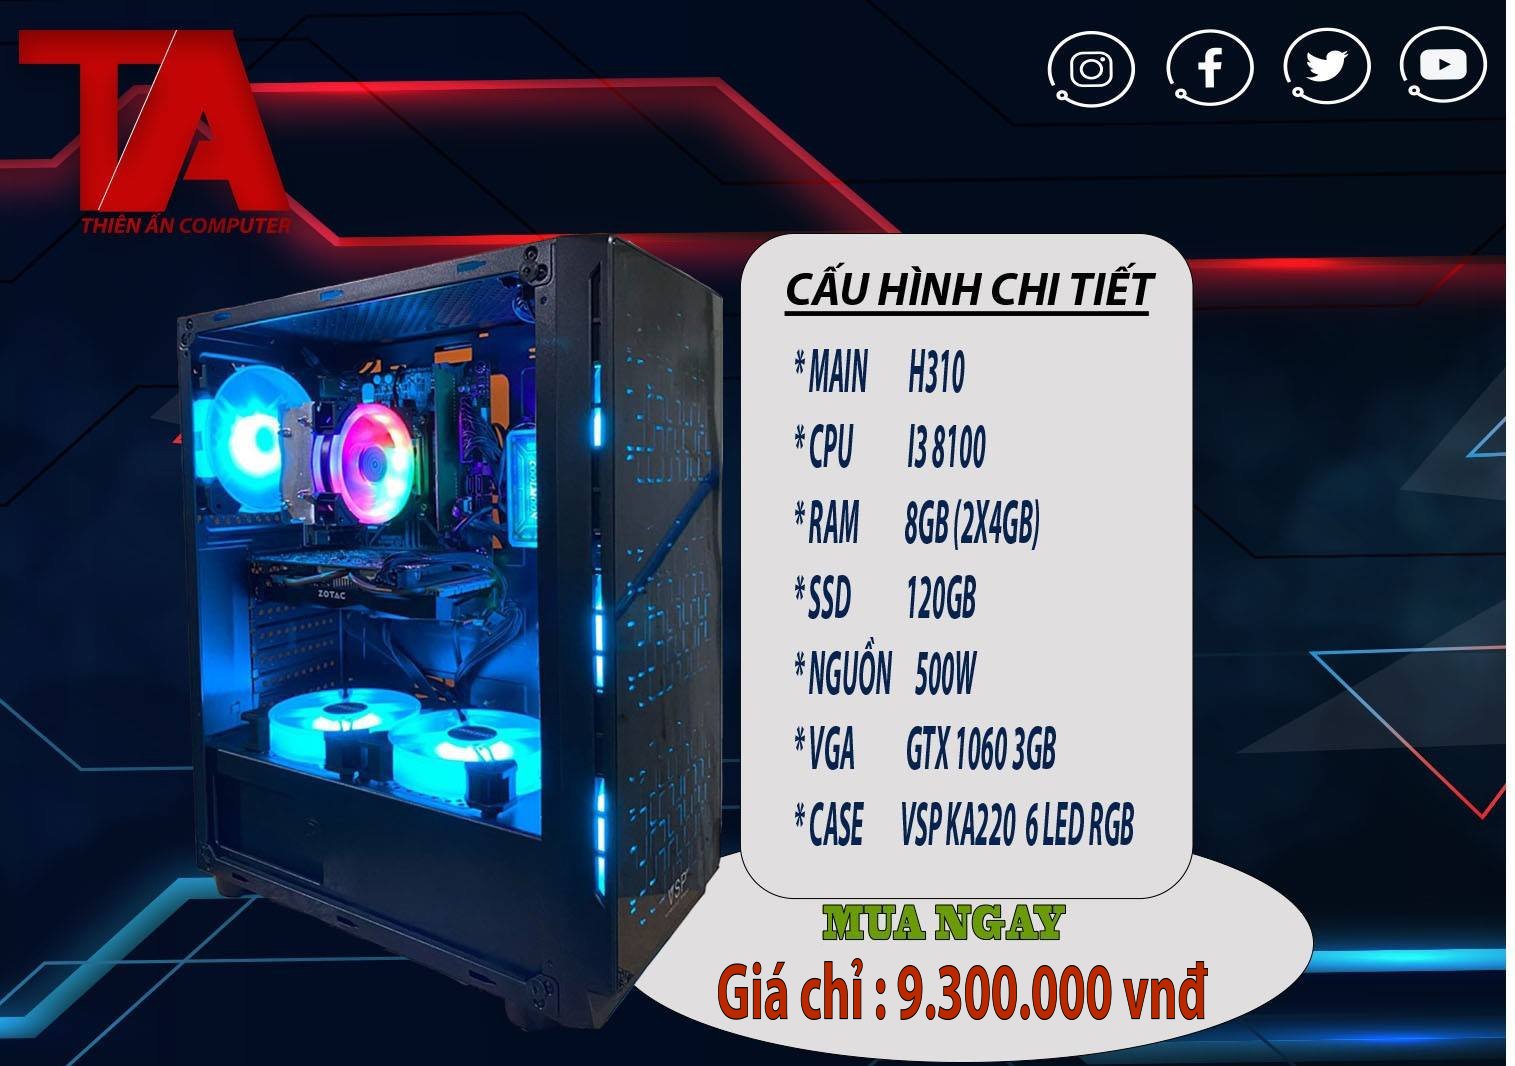 Bộ máy chơi game online chạy chip Intel thế hệ 8 bán chạy nhất